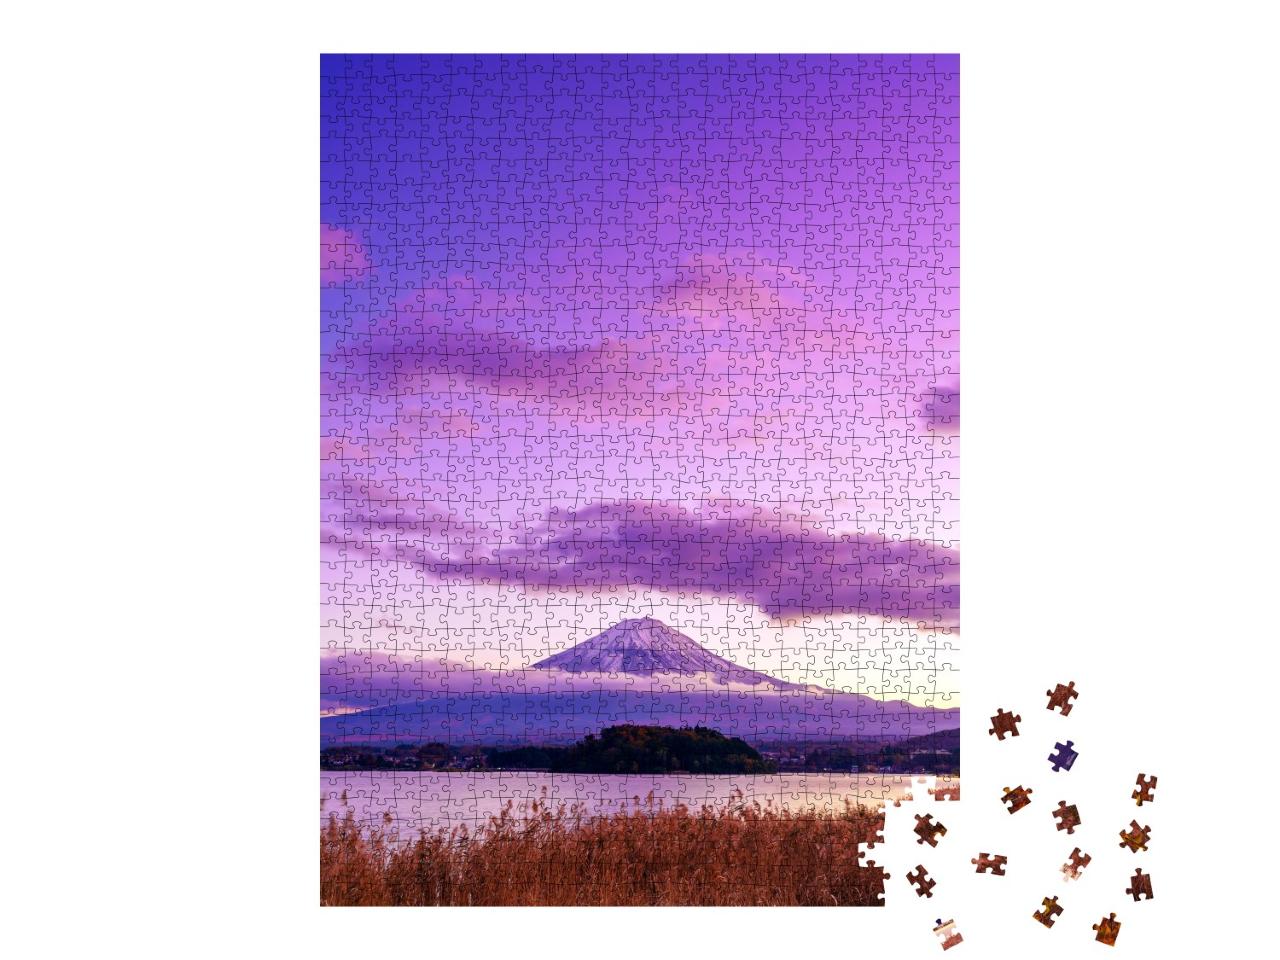 Puzzle de 1000 pièces « Mont Fuji mystique, vue depuis le lac Kawaguchi, Japon »